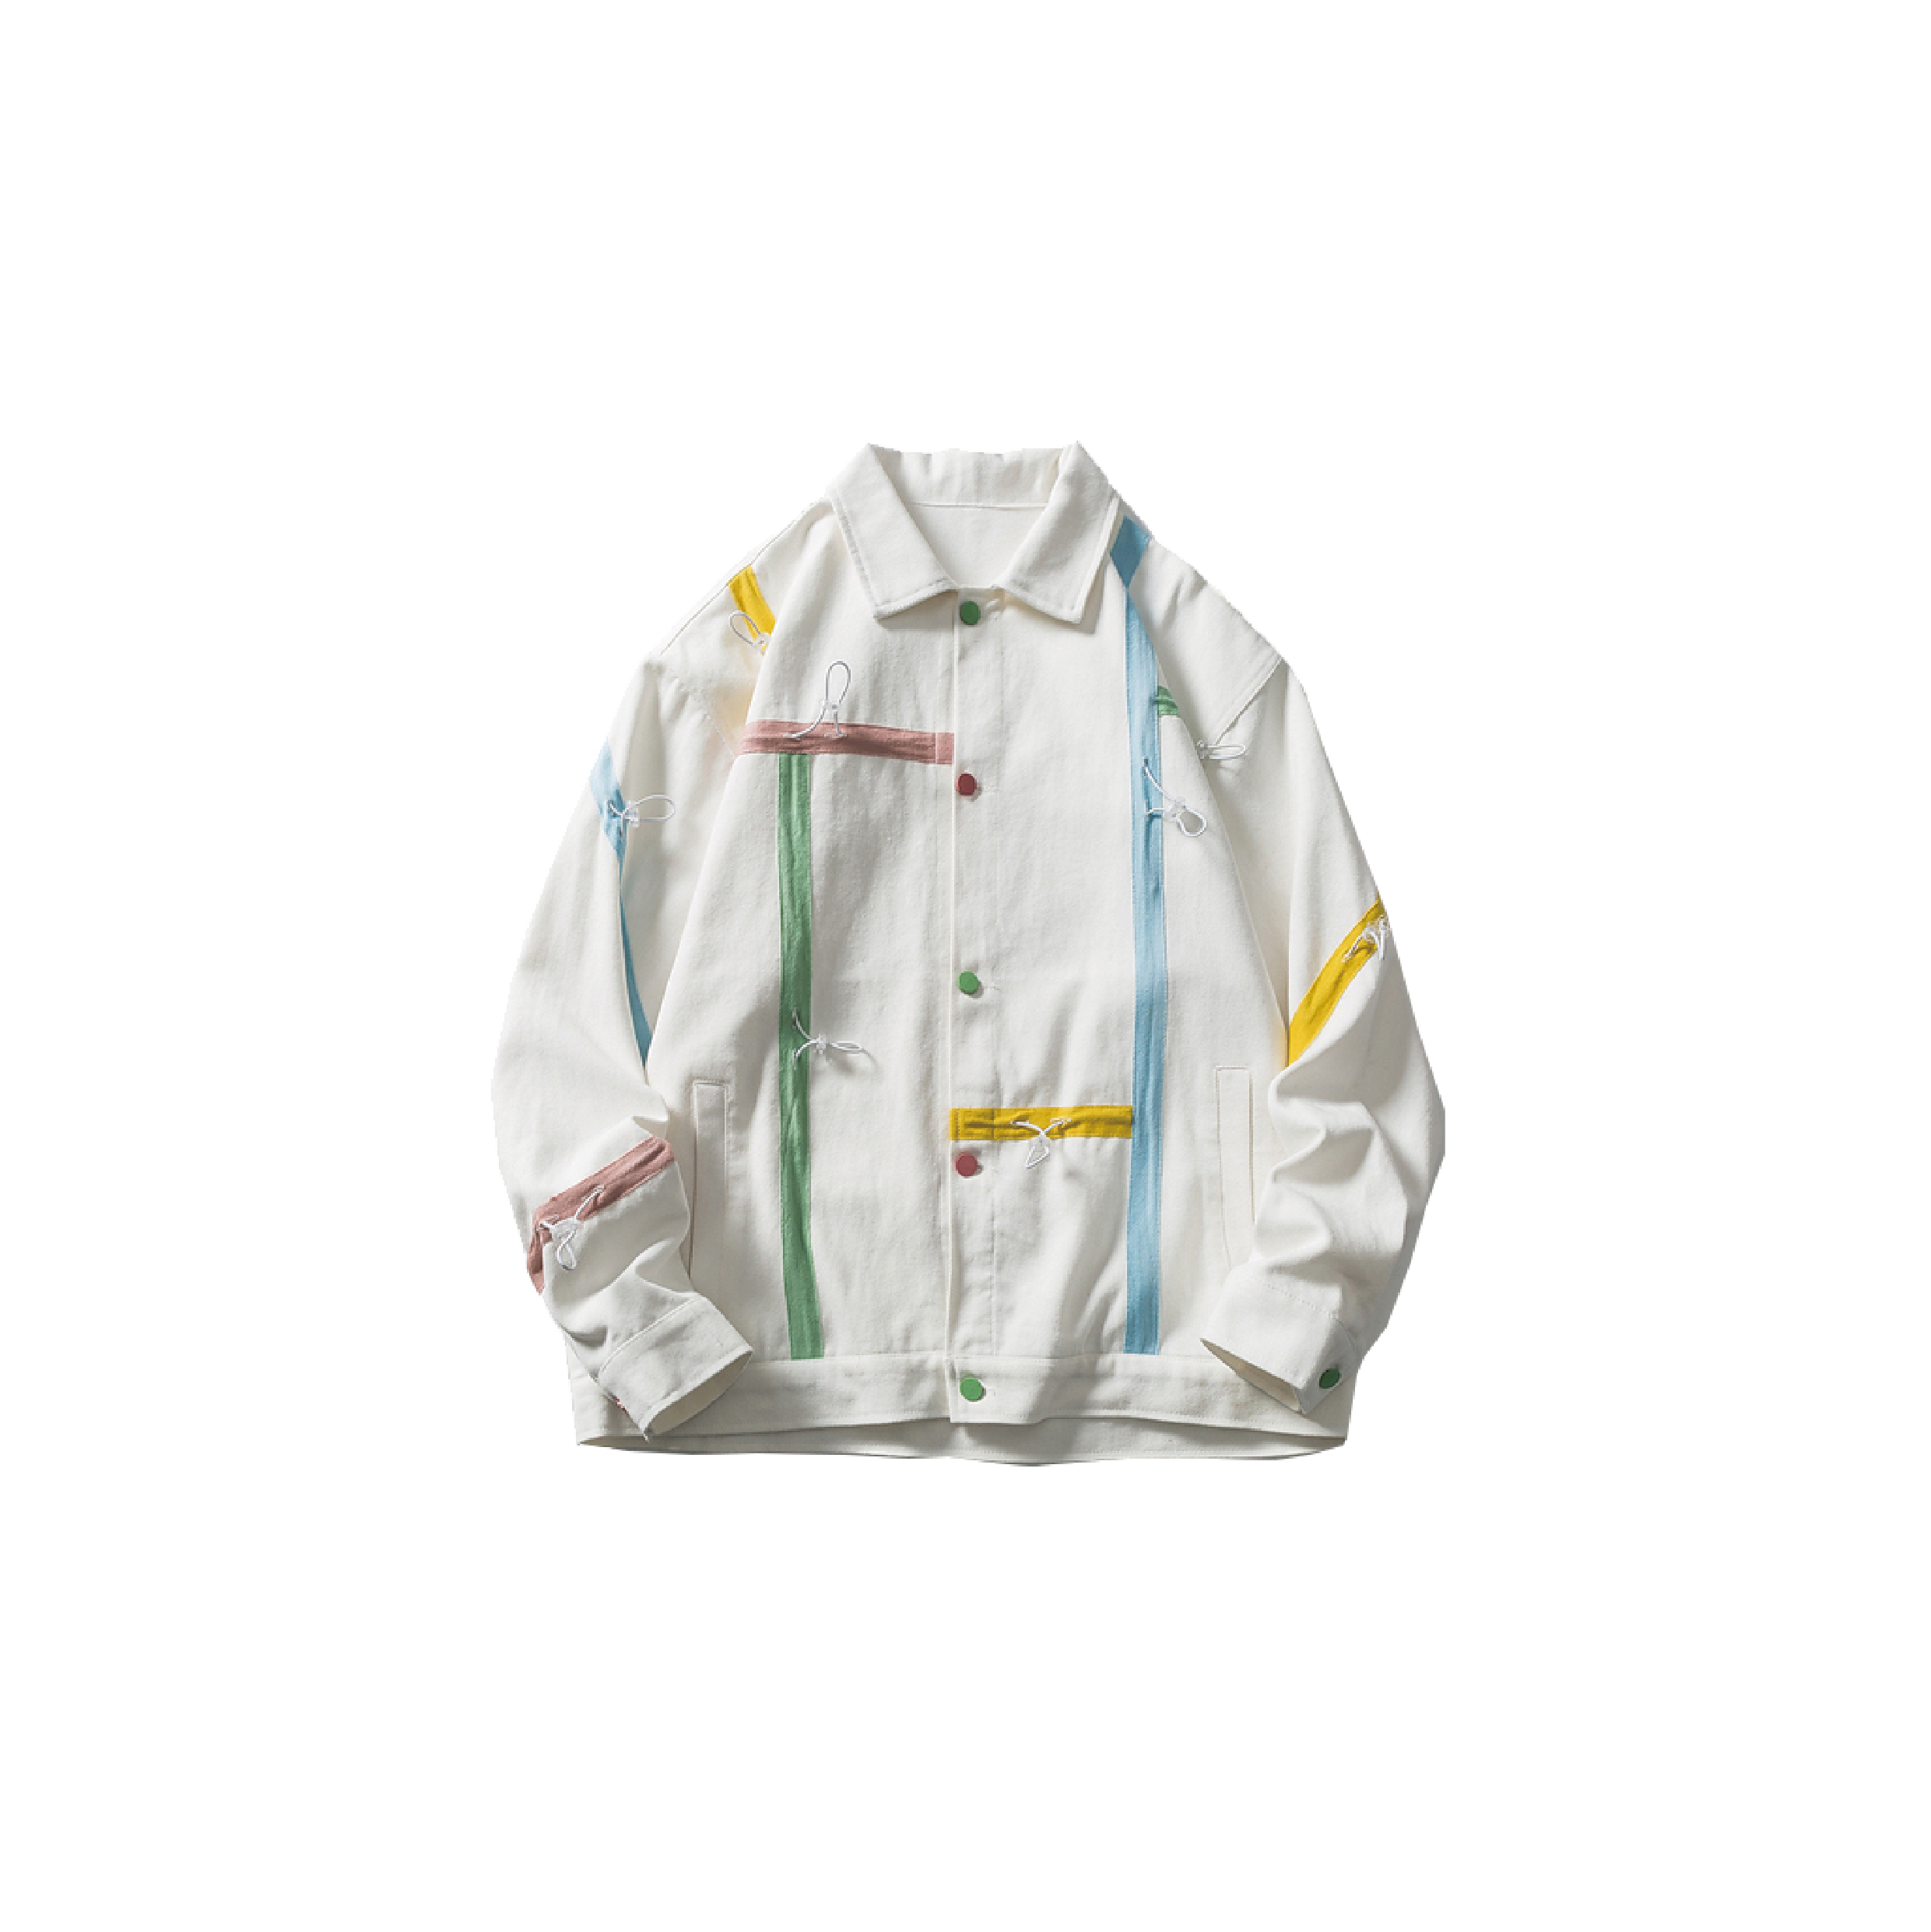 Colorful Ribbon Stitching Jacket